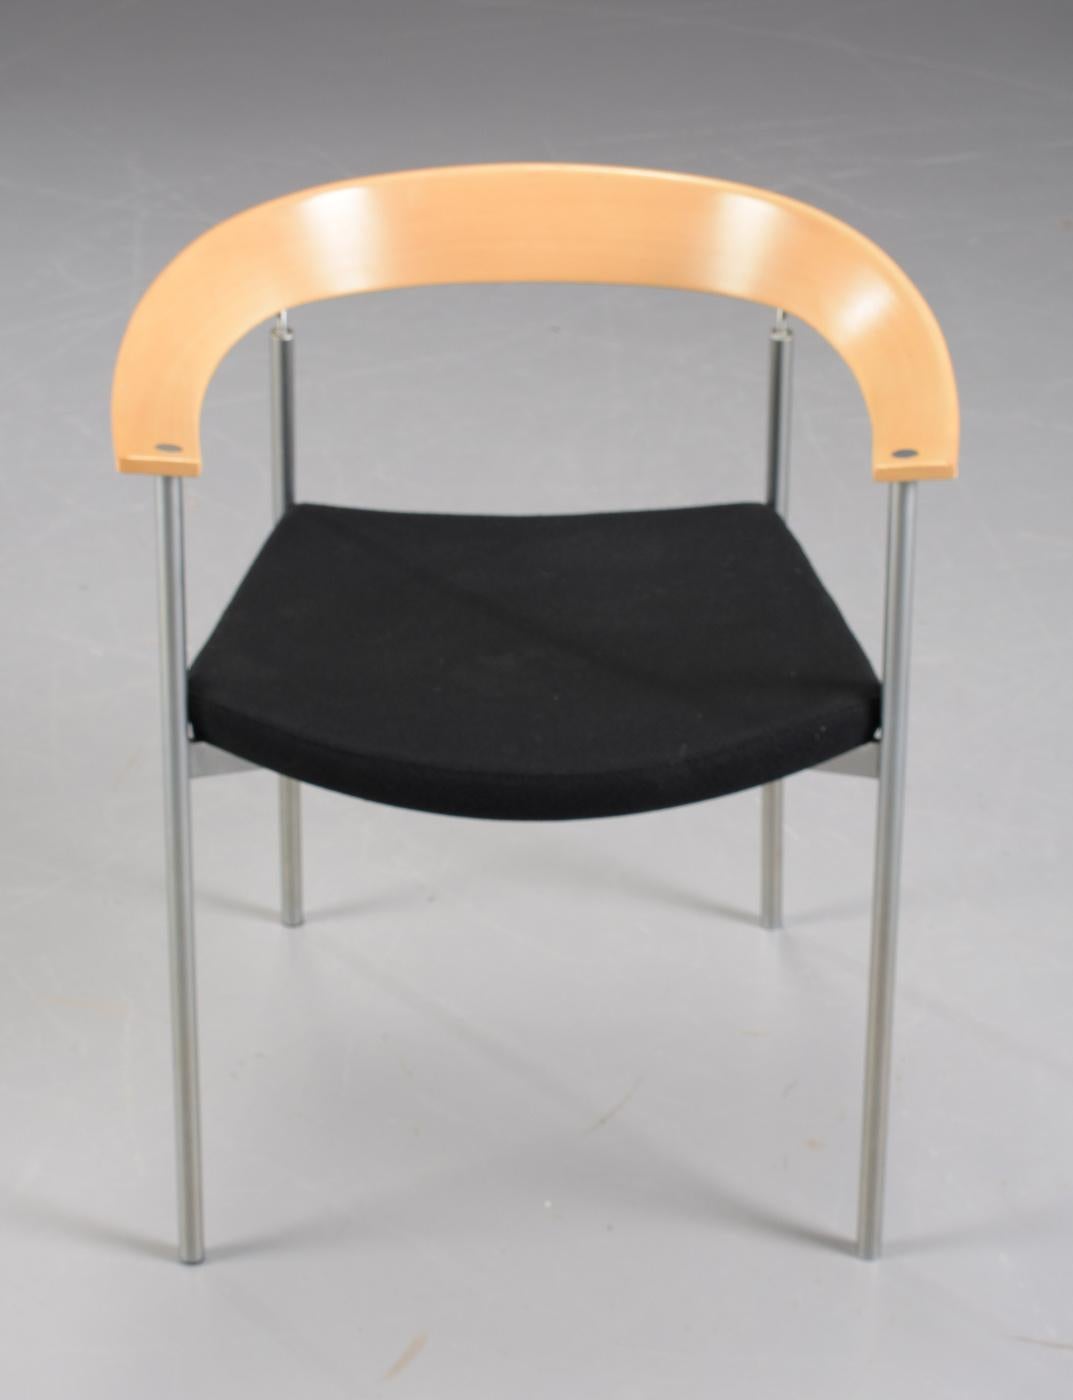 Fauteuils danois empilables Johannes Foersom conçus en 1998 en tube d'acier, hêtre, chrome et cuir noir, fabriqués par Paustian.

Les chaises sont dotées d'un élégant accoudoir et d'un dossier de forme ronde et organique en hêtre, d'une structure